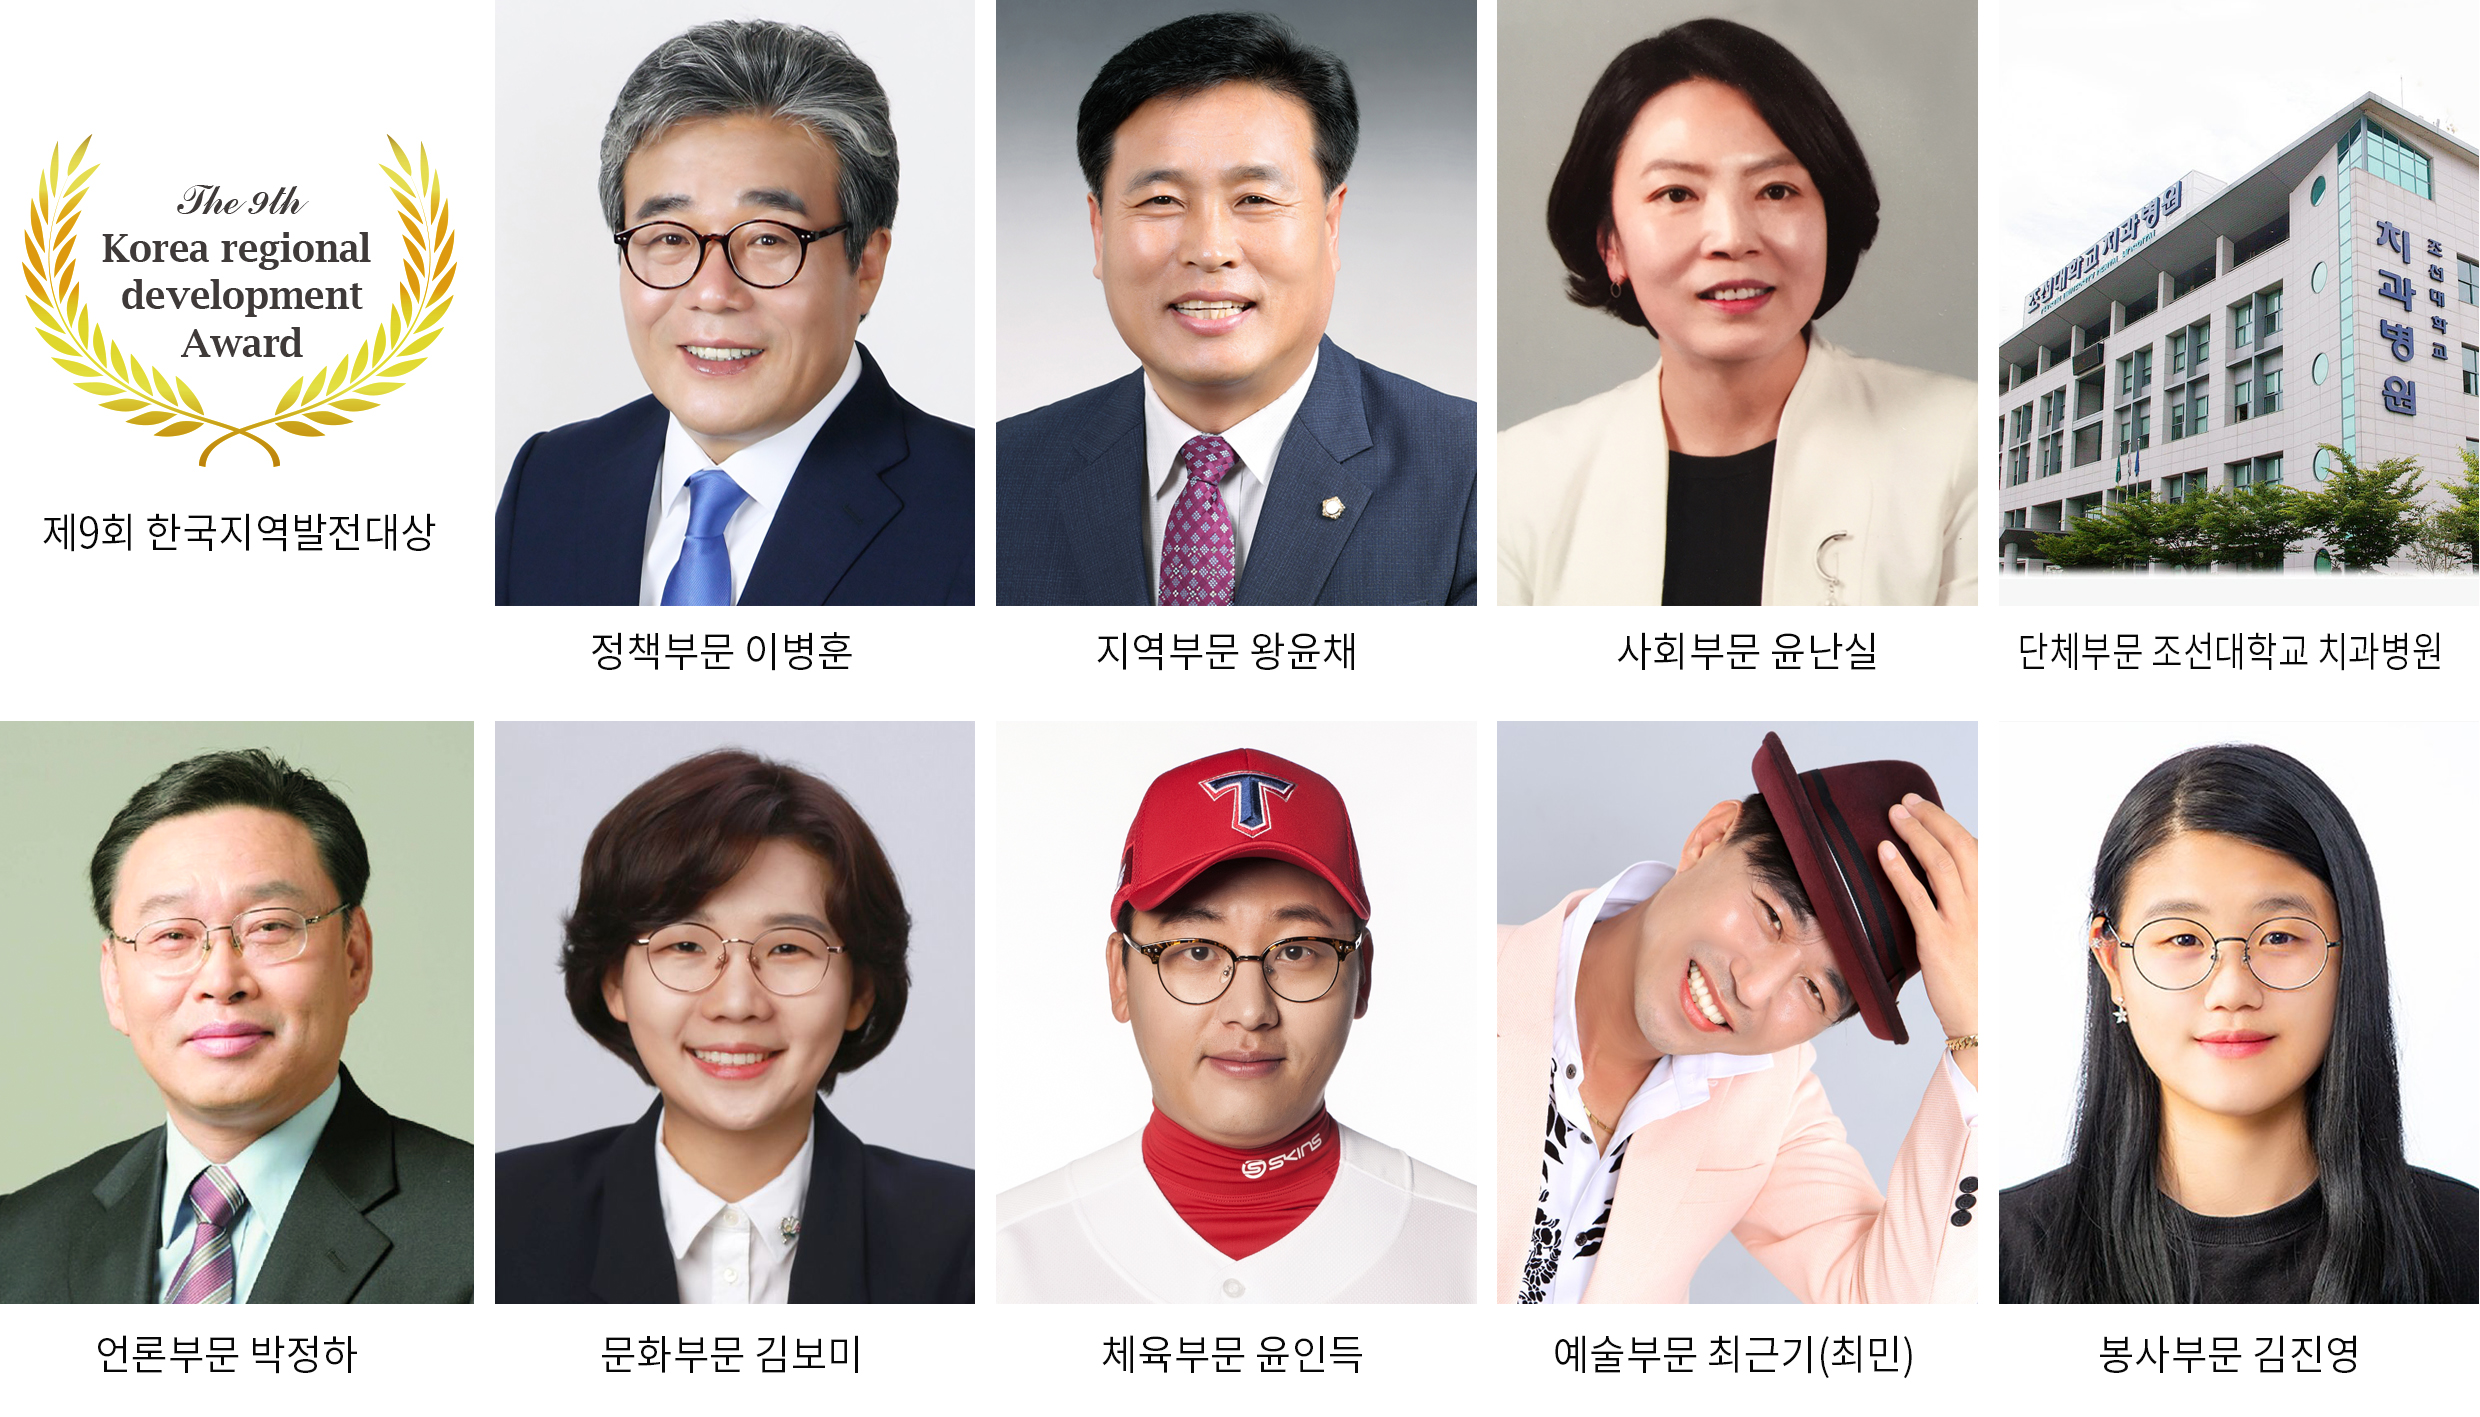 제9회 한국지역발전대상 시상식 11월 21일(수) 오후 6시 개최